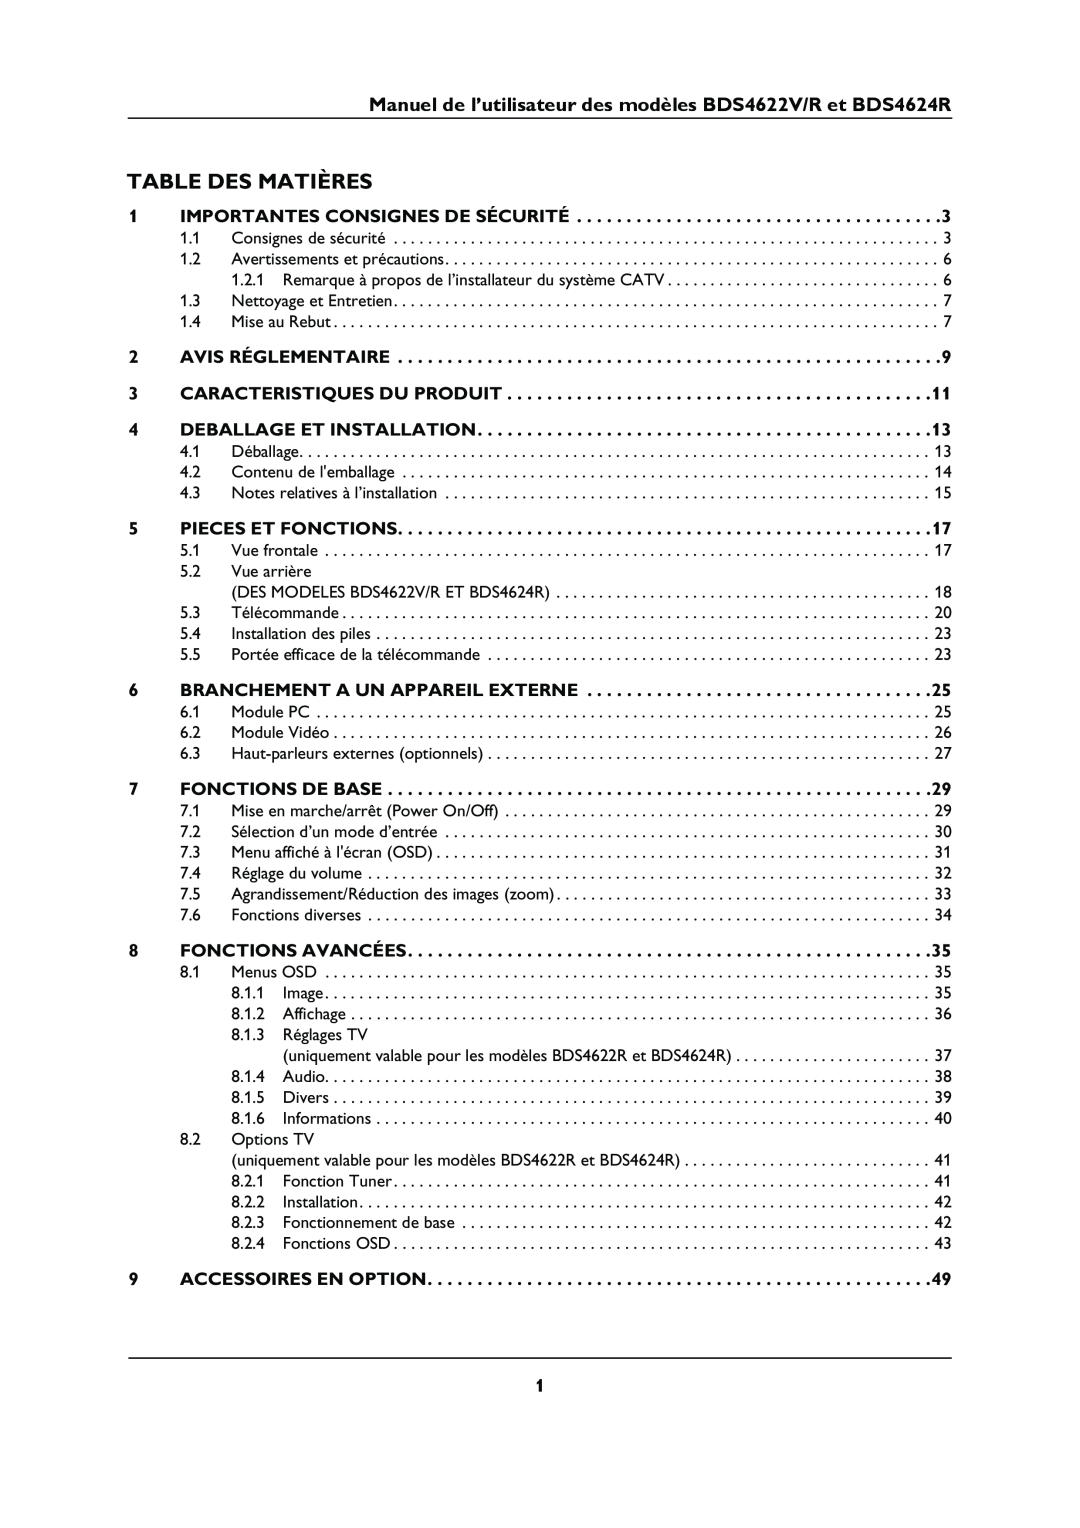 Philips manual Table Des Matières, Manuel de l’utilisateur des modèles BDS4622V/R et BDS4624R, Deballage Et Installation 